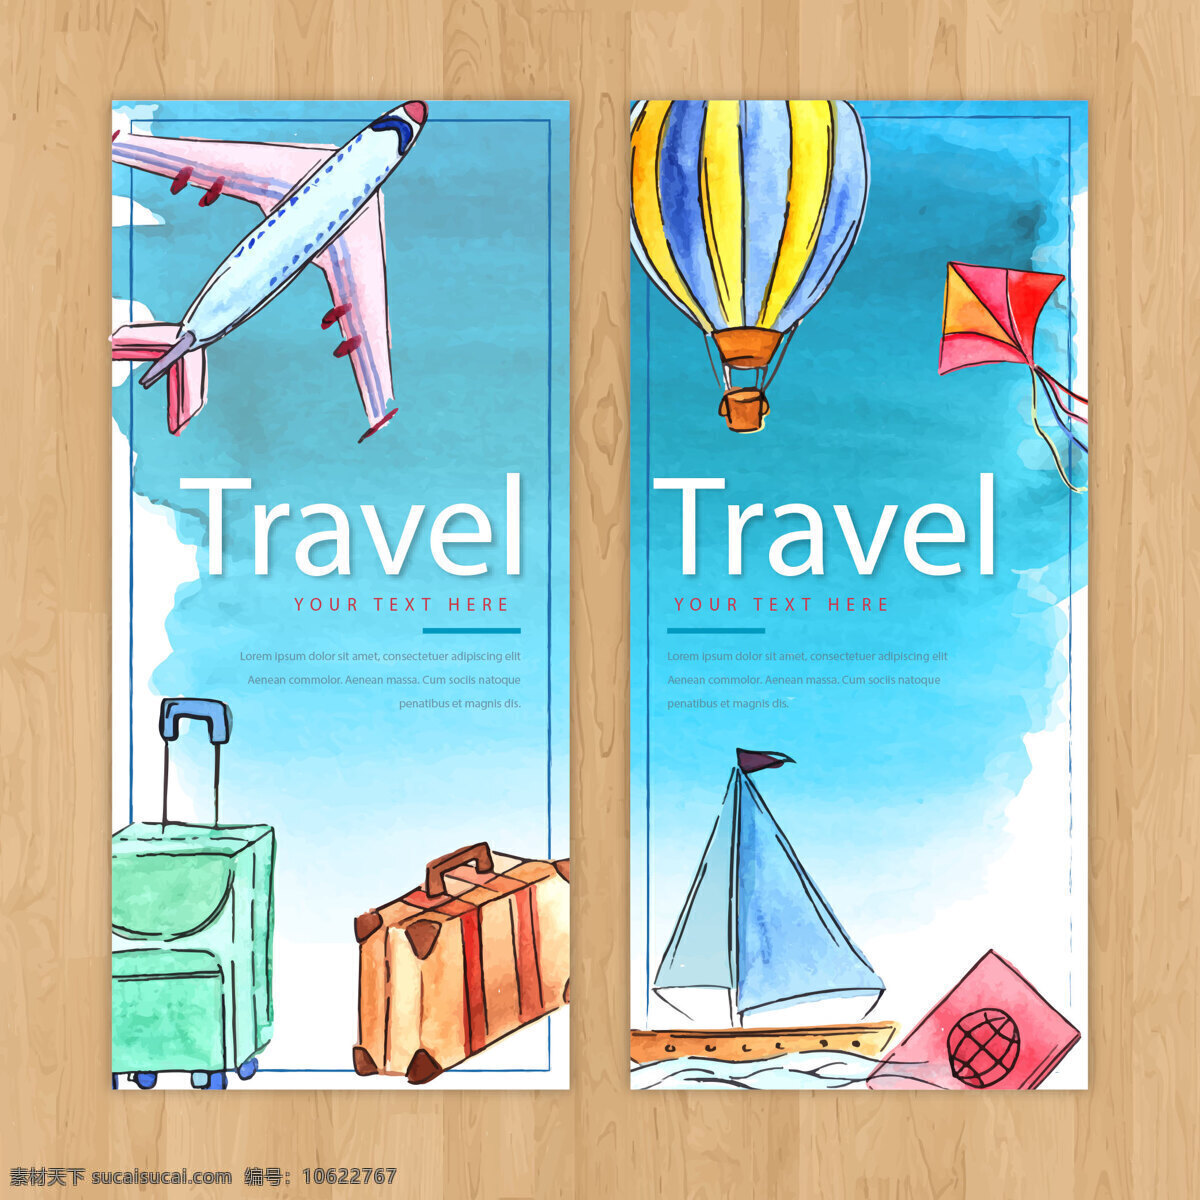 旅游业 矢量 手机 帆船 风筝 矢量素材 设计素材 热汽球 旅行箱 平面素材